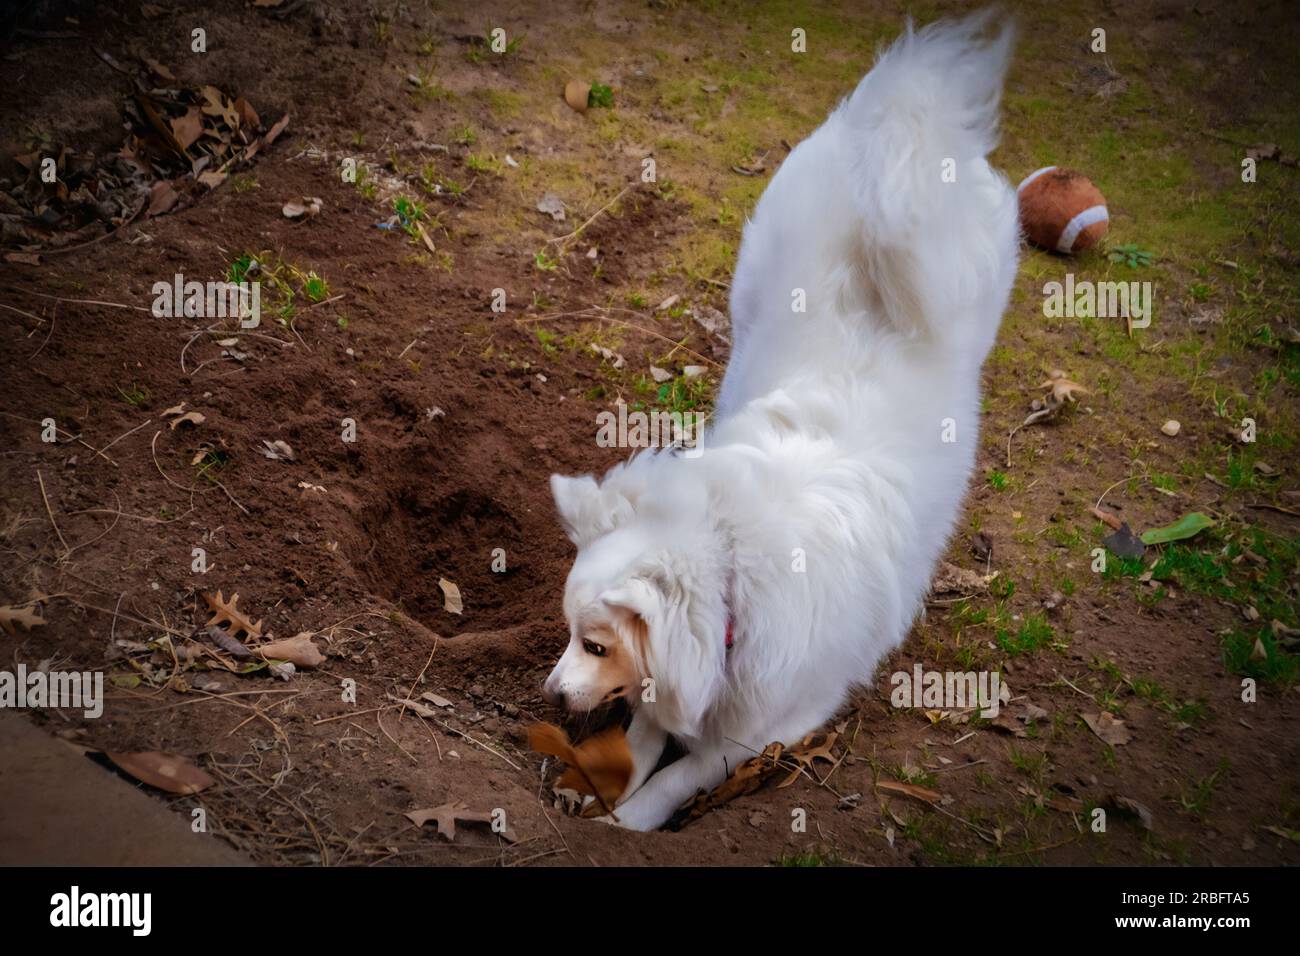 Blanc Spritz American Eskimo chien creusant un trou dans la terre brune avec un peu d'herbe tôt de printemps et jouet de football flou - se concentrer sur le visage - un peu de mouvement b Banque D'Images